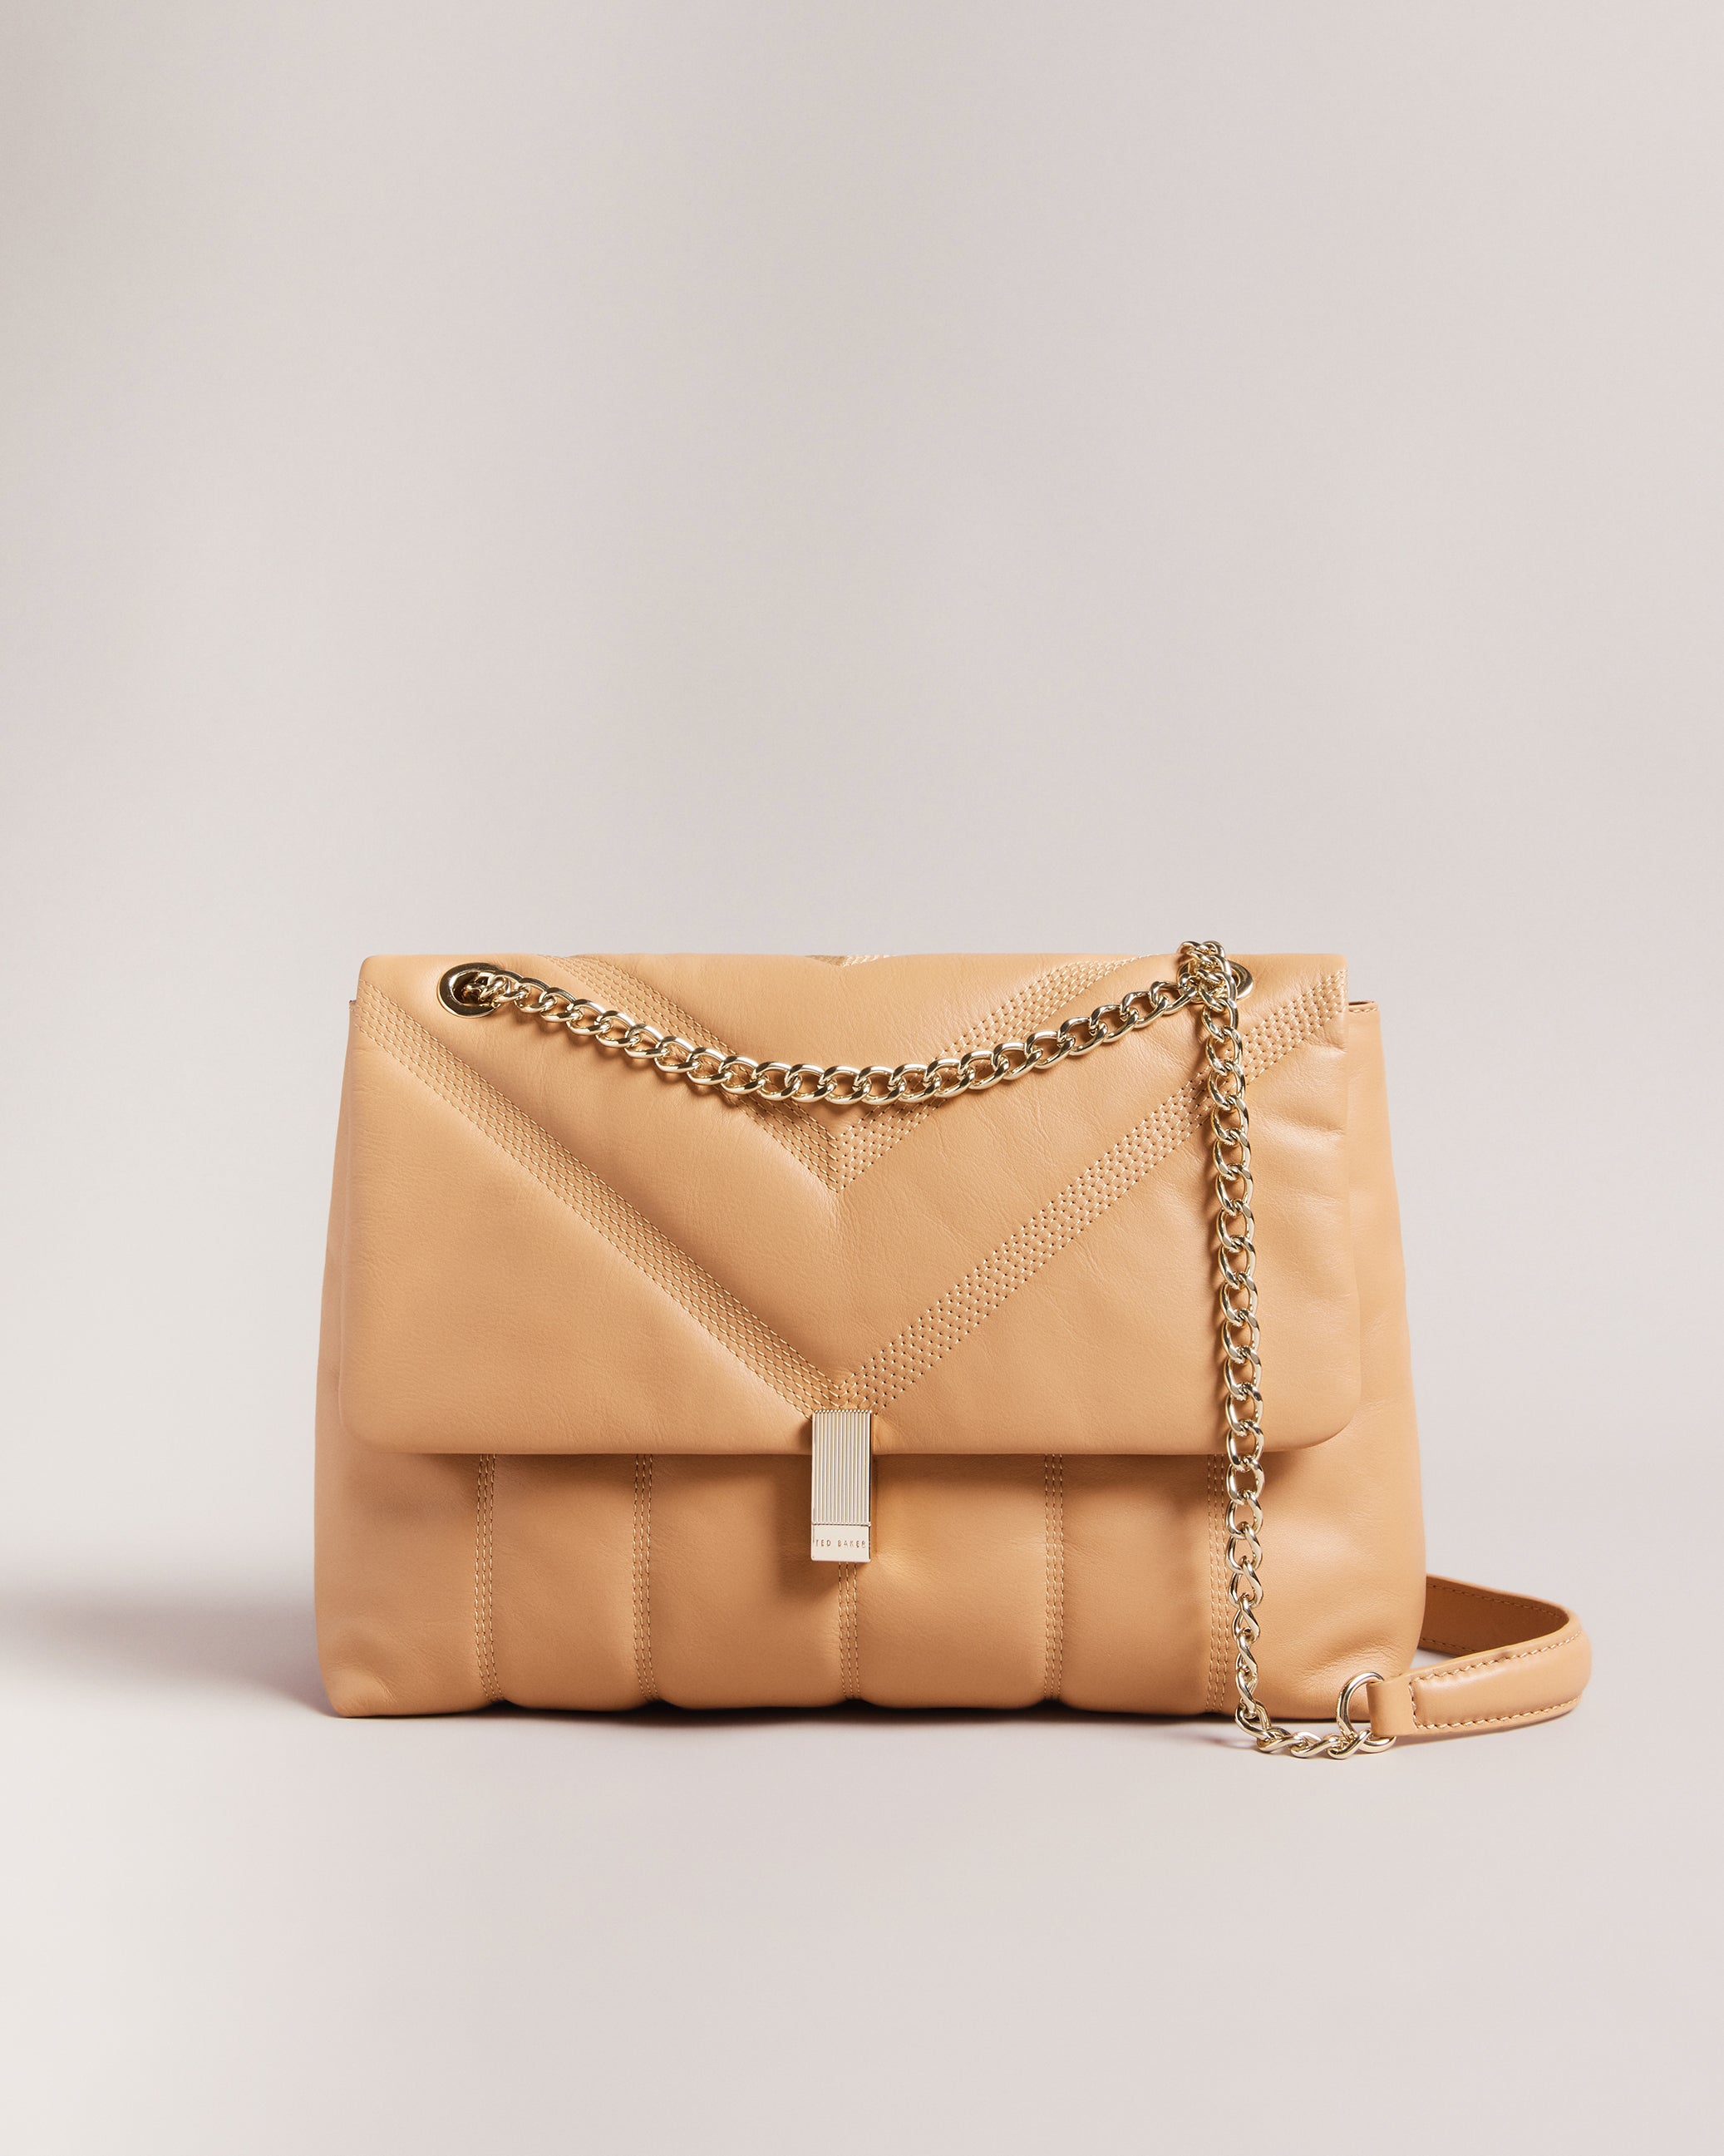 TED BAKER Medium Leather Envelope Cross Body Bag for Women